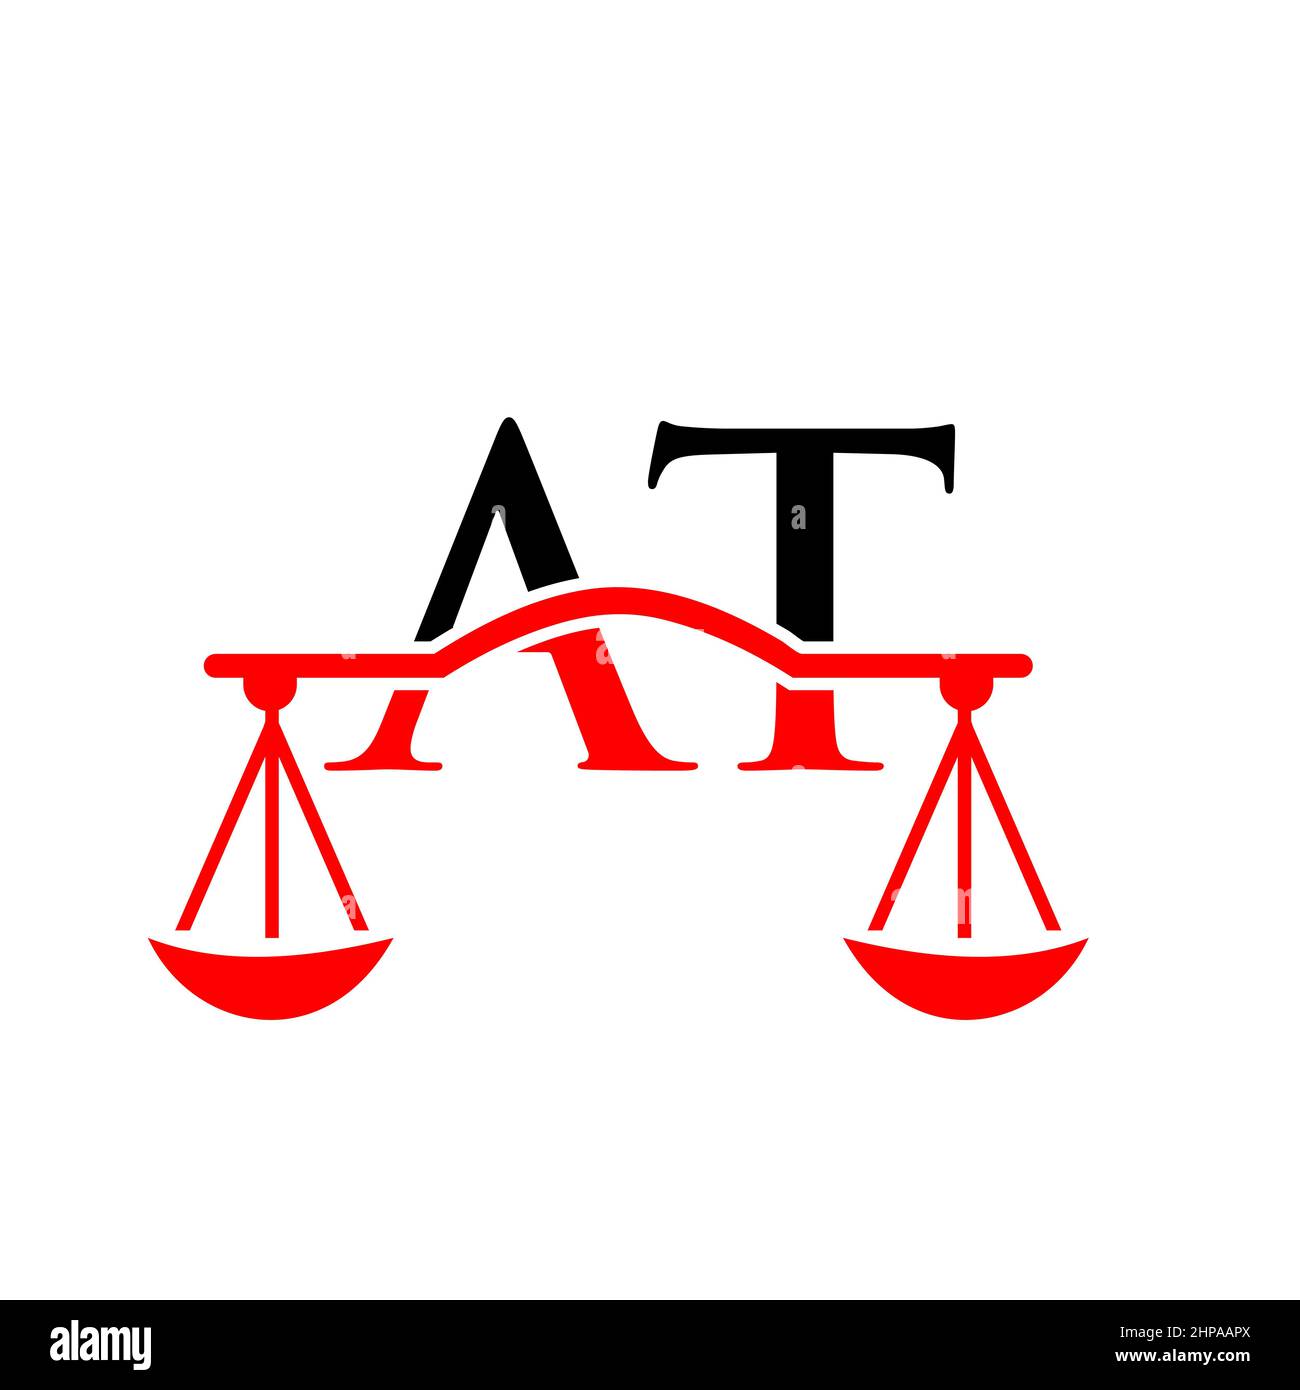 Lettre du cabinet D'avocats AU logo Design. Avocat, Justice, avocat, juridique, Service d'avocat, Law Office, Scale. Logo de la loi sur AU signe de la lettre Illustration de Vecteur